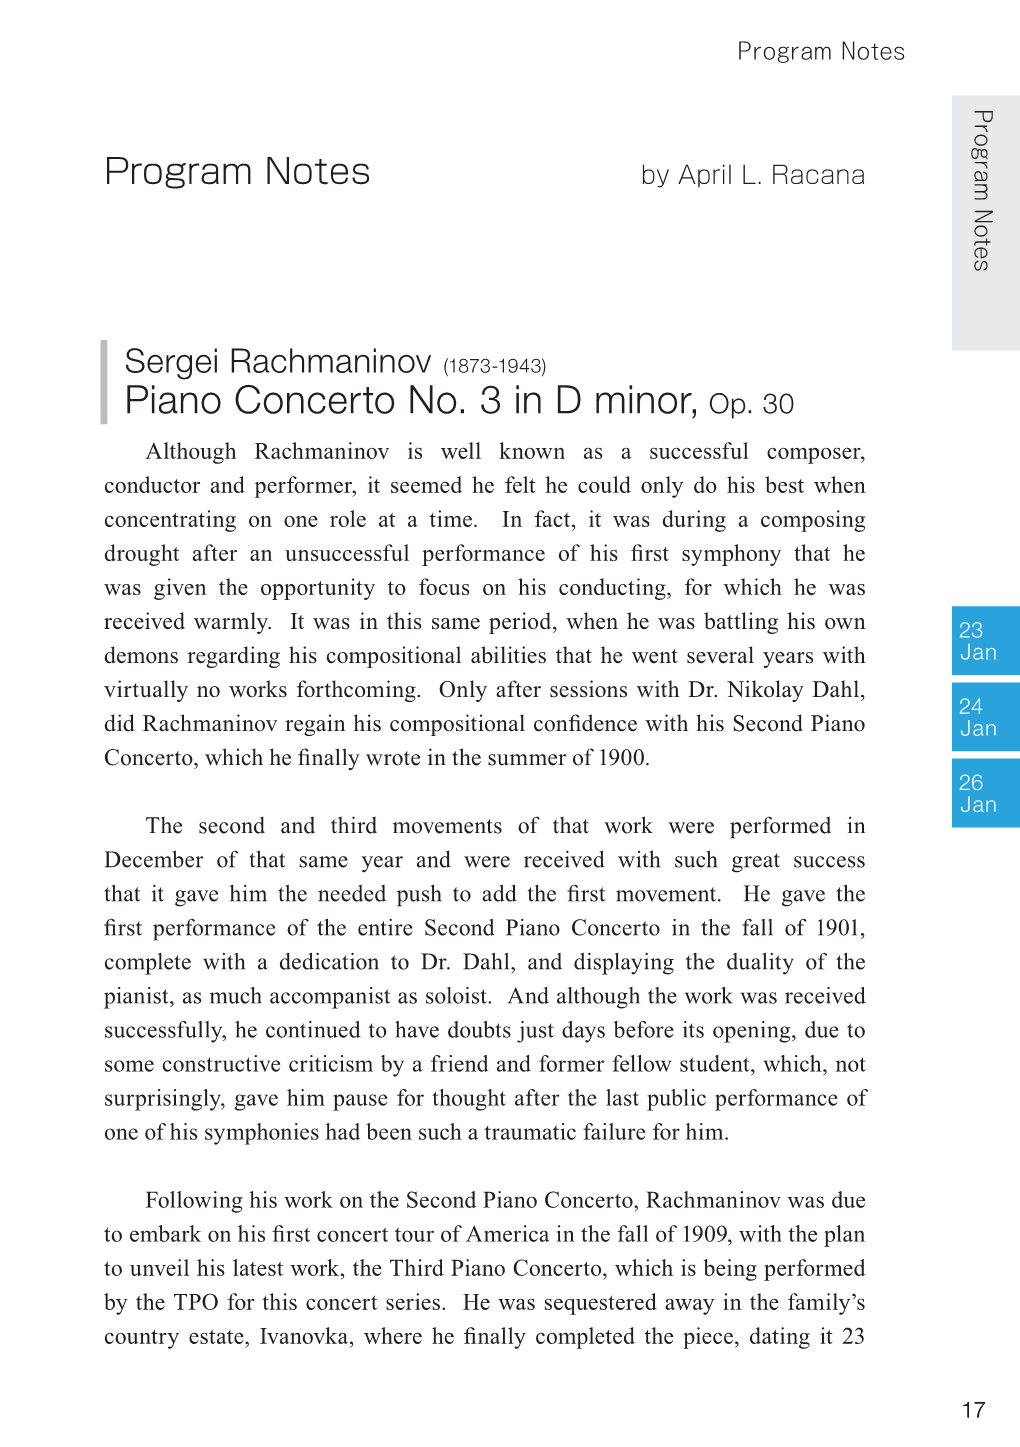 Piano Concerto No. 3 in D Minor, Op. 30